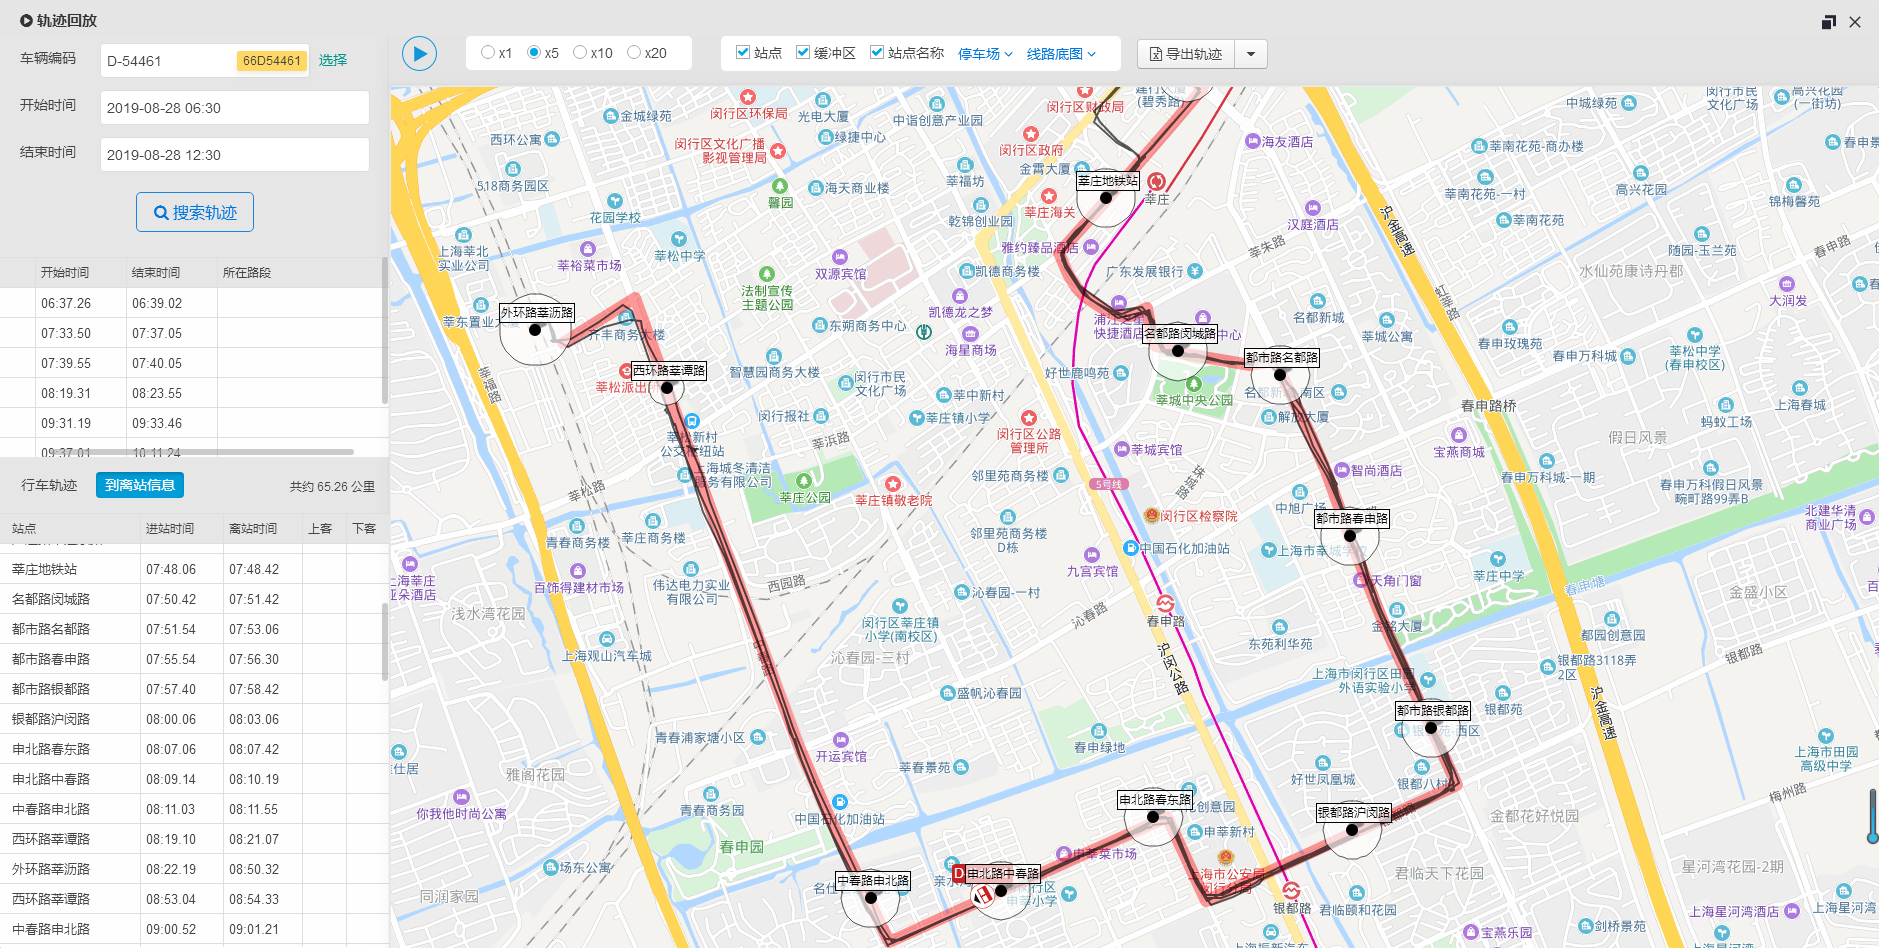 中山新开通B2、B23快速公交路线，多条路线调整,中山市公共交通运输集团有限公司